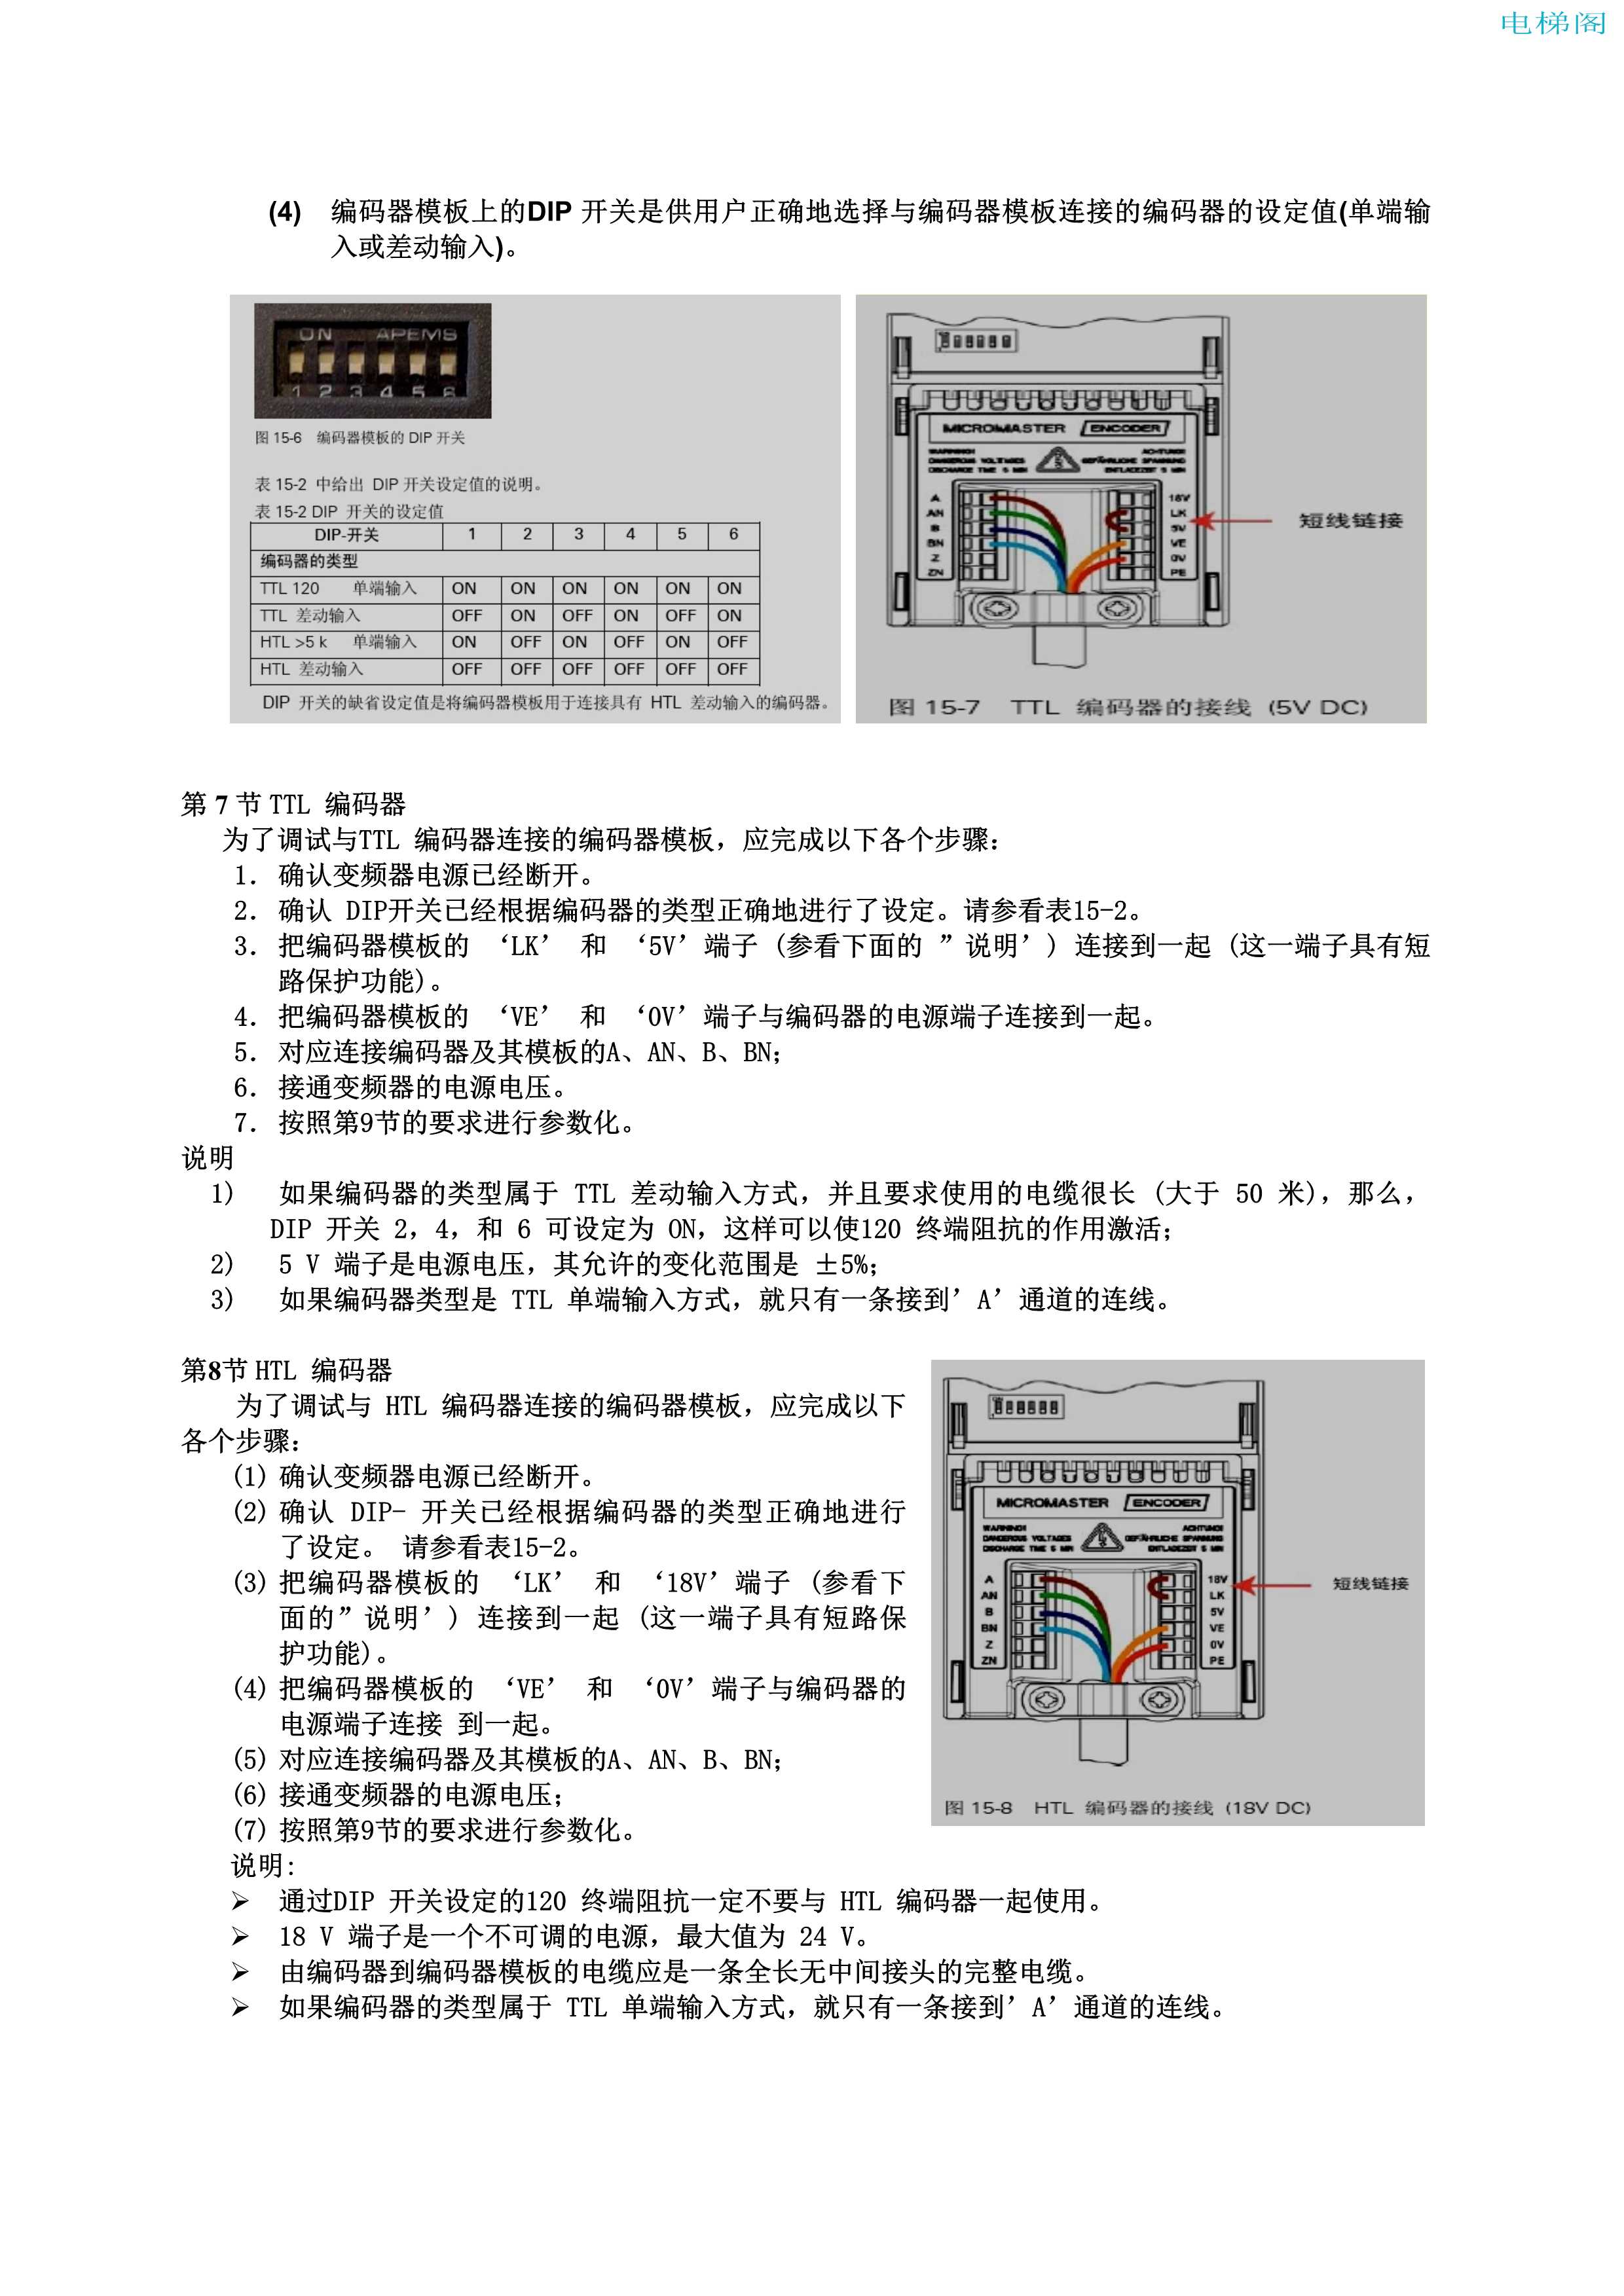 西门子MM440变频器电梯调试指导